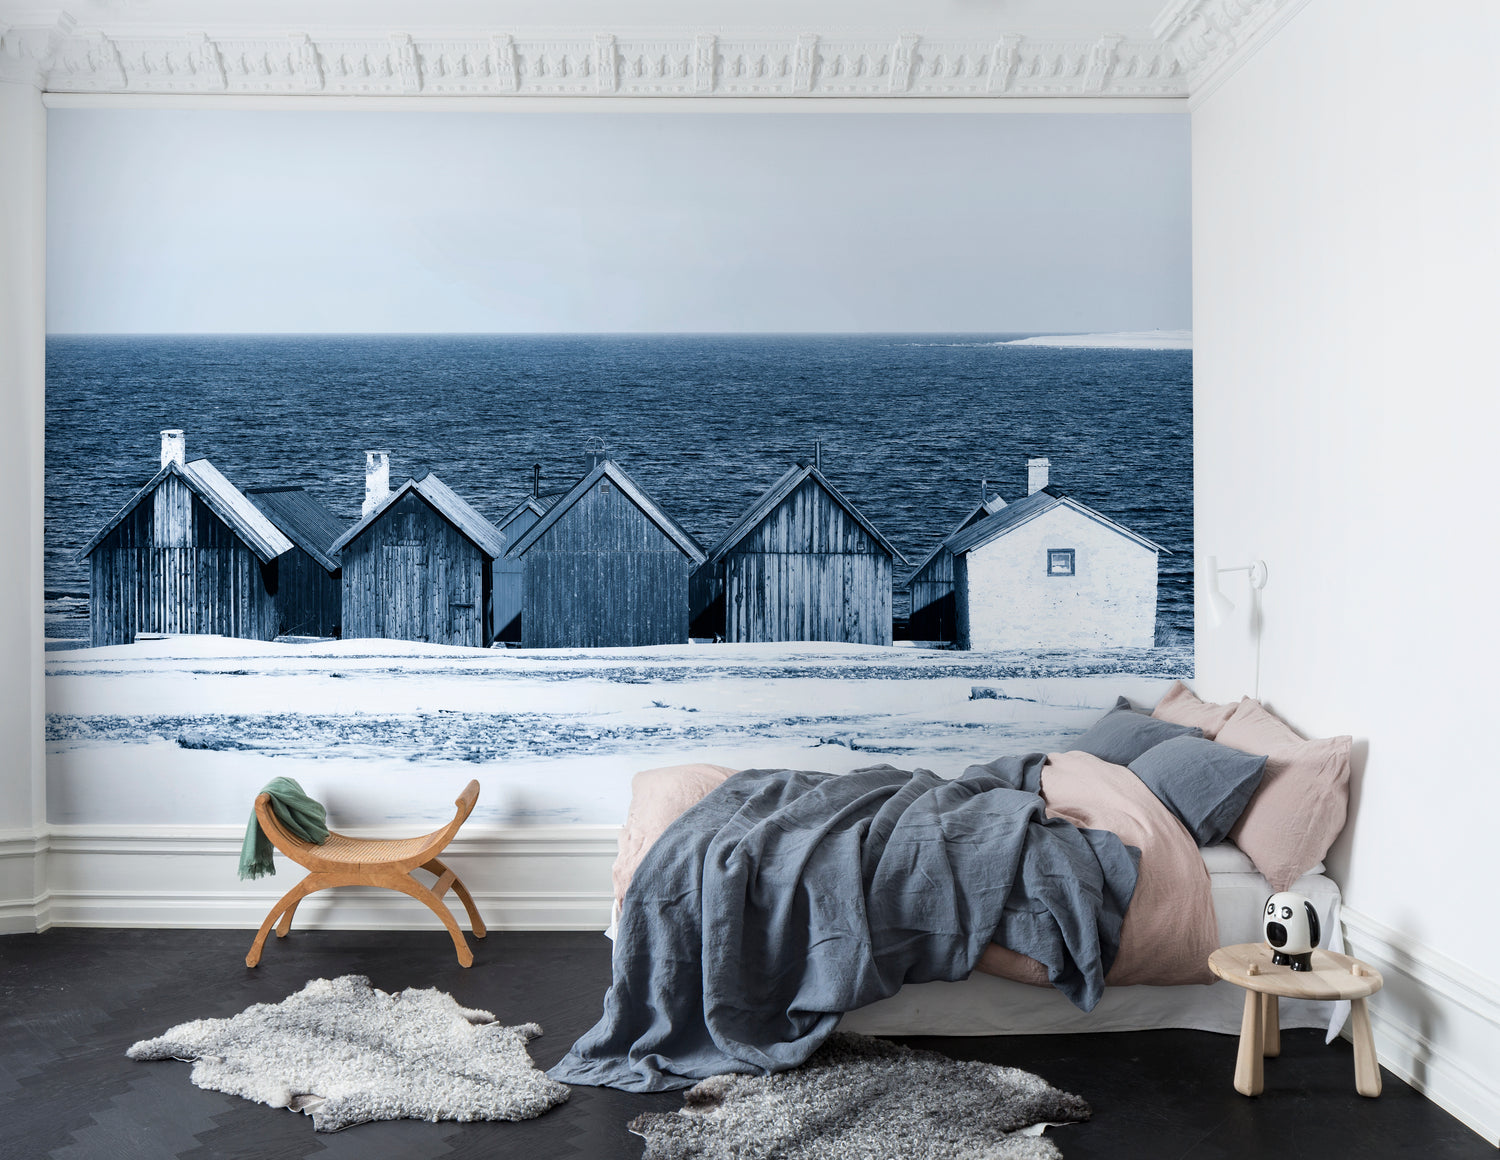 Boathouse Blues Landscape Wallpaper in bedroom